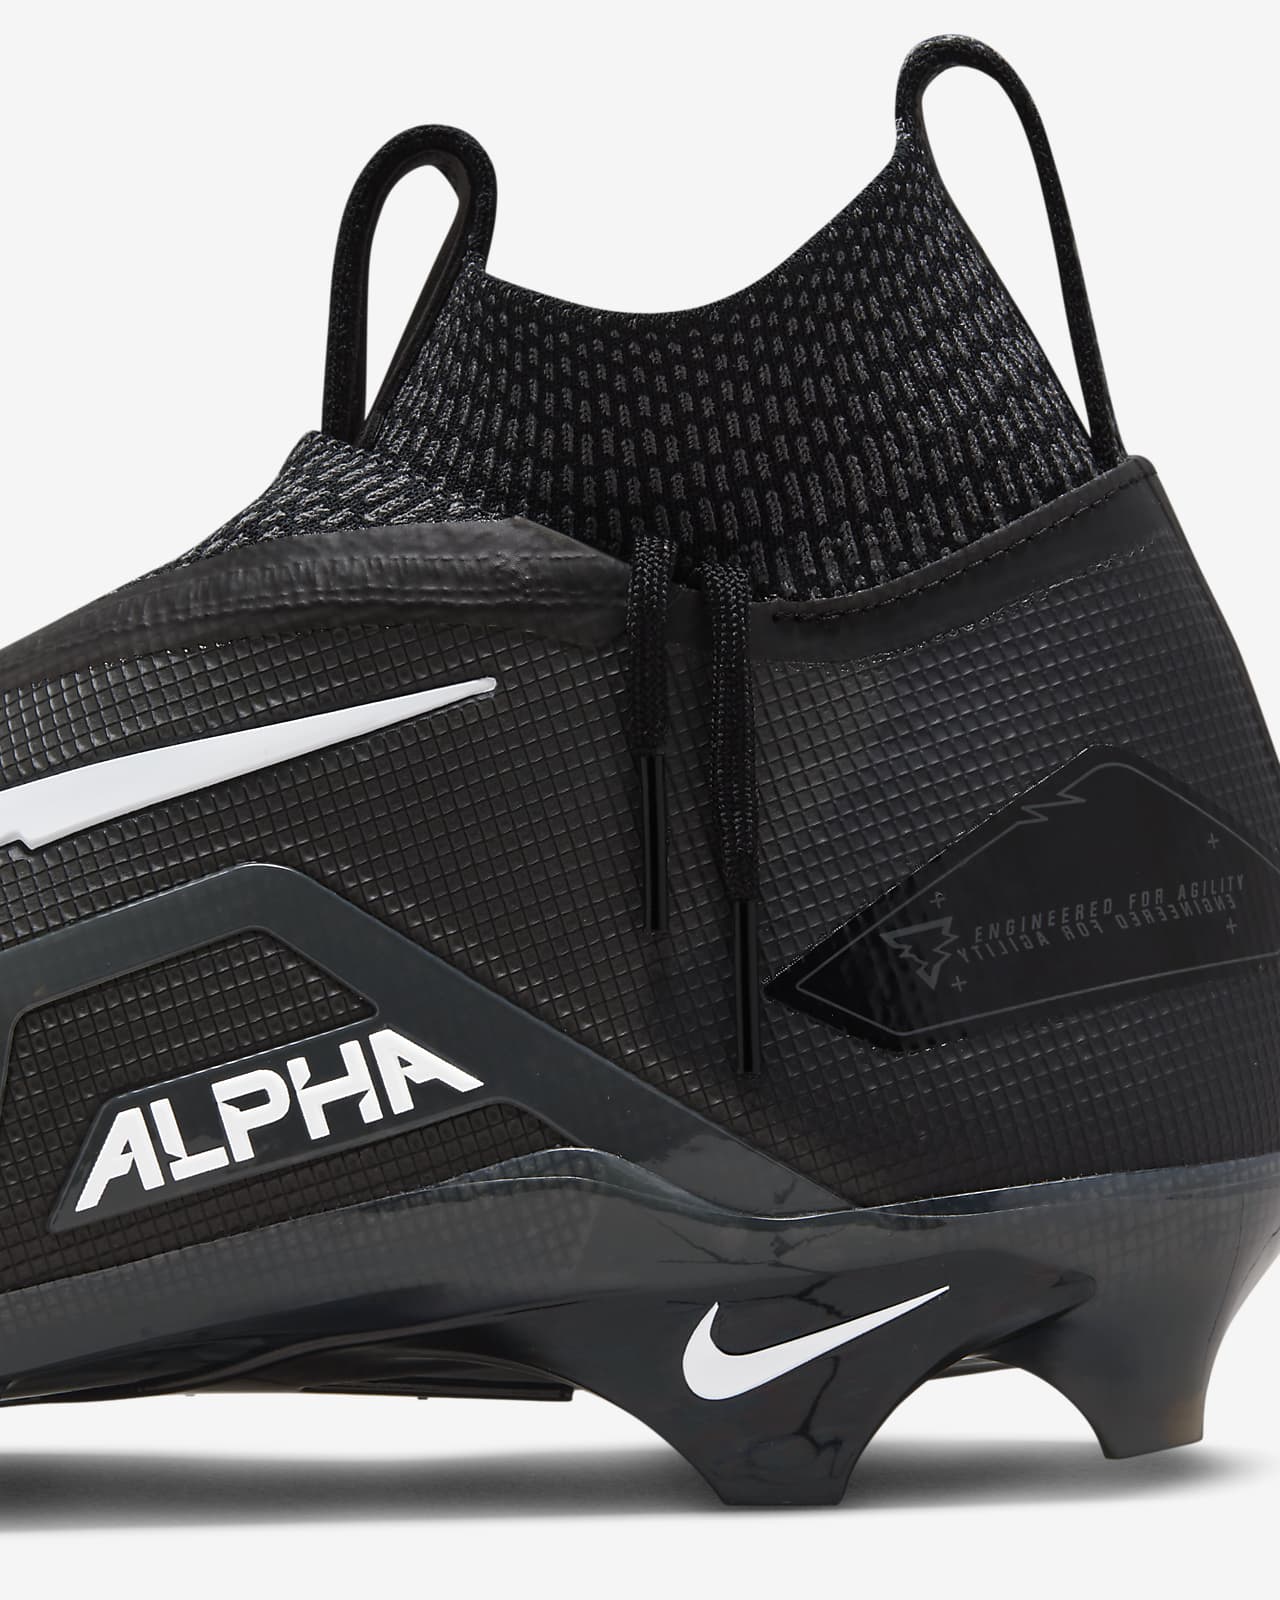 Nike Alpha Menace Elite 3 Travis Kelce Men's Football Cleats.